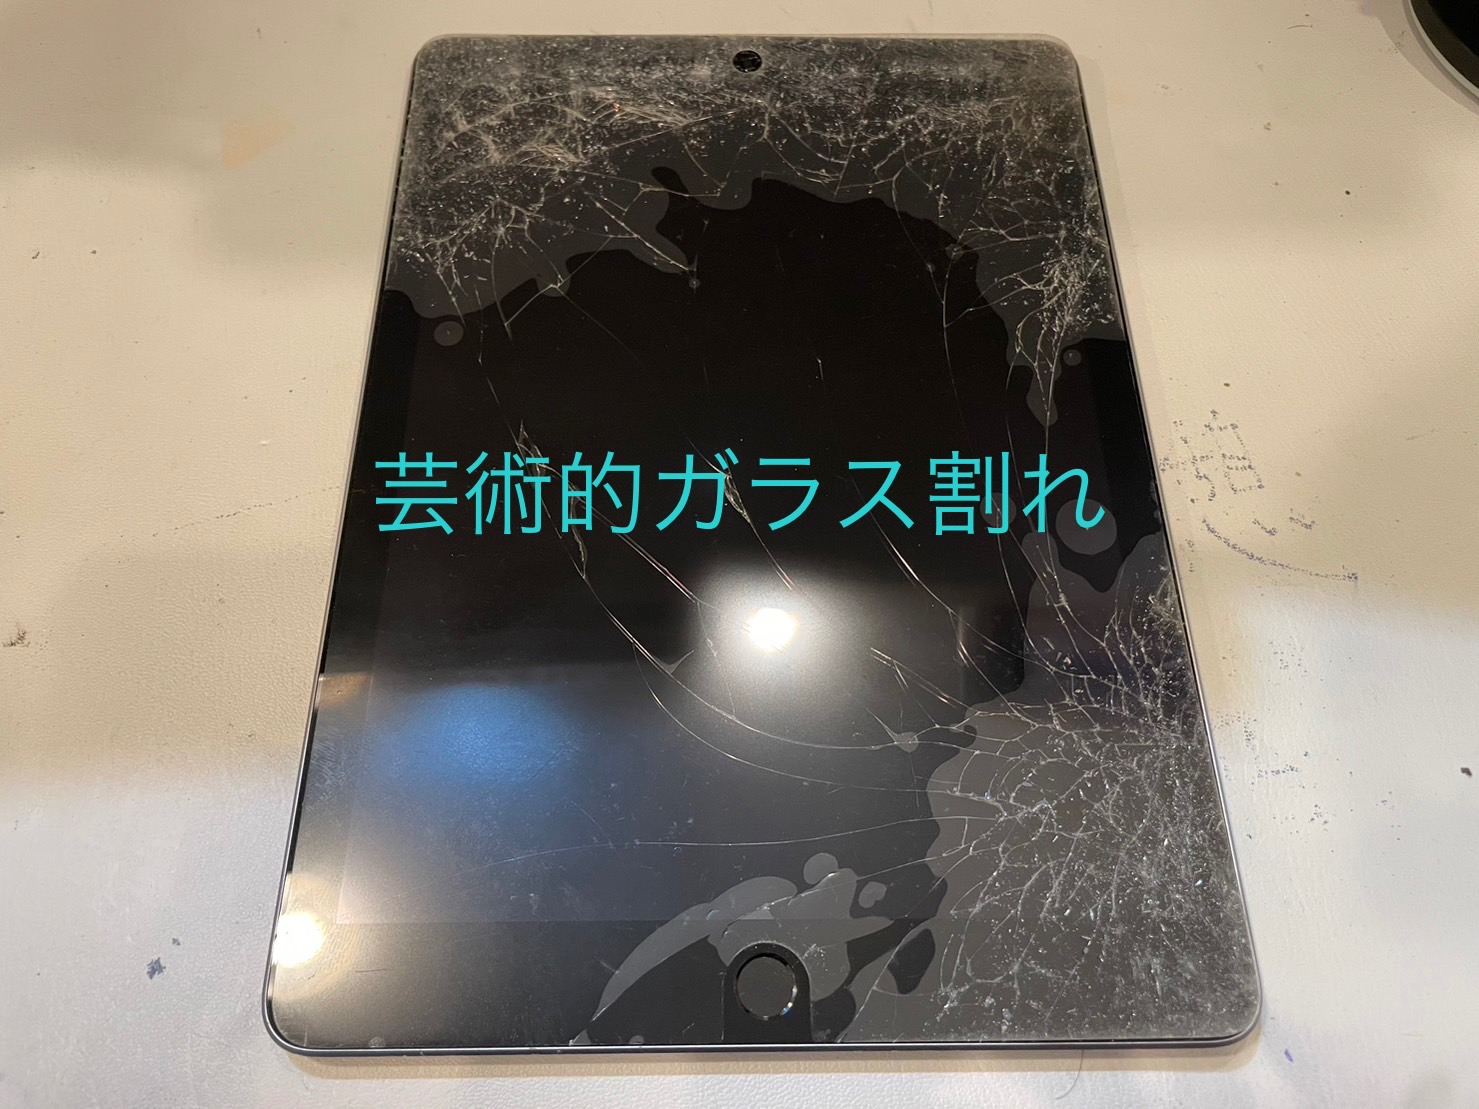 iPad6 ガラス割れ【iPad修理所沢】 | 所沢のiPhone修理